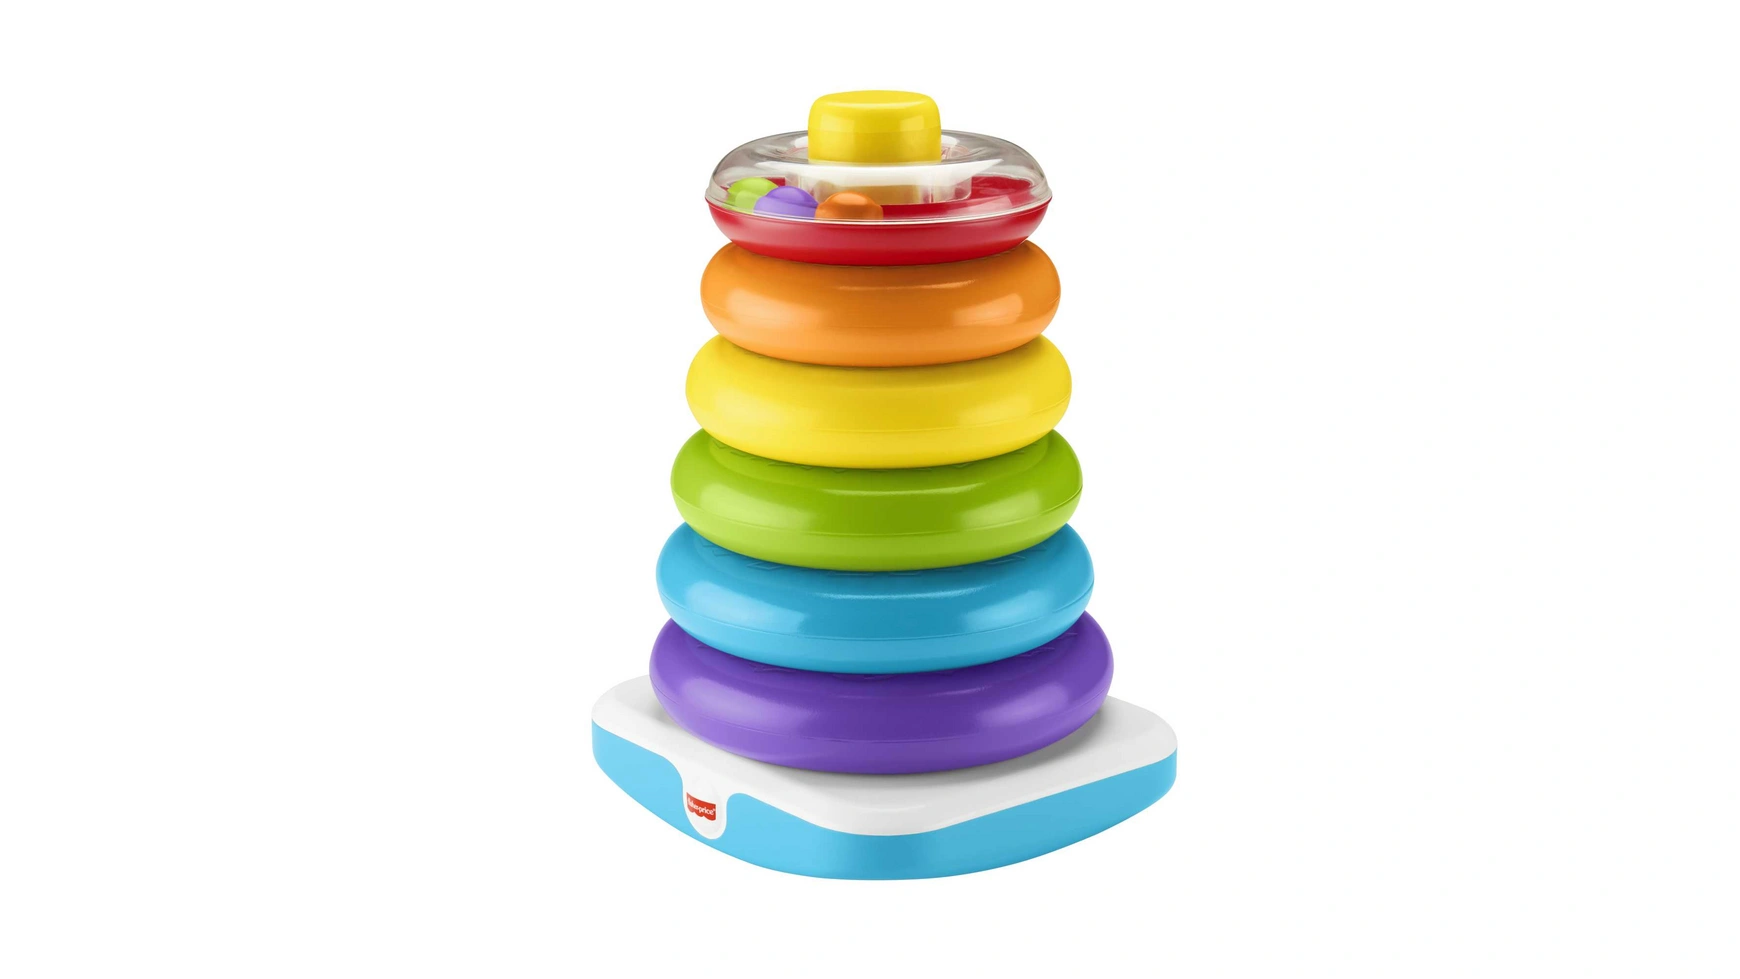 Гигантская цветная кольцевая пирамида Fisher Price, подключаемая игрушка, штабелируемая башня игрушка ходунки mattel fisher price зебра dpl54